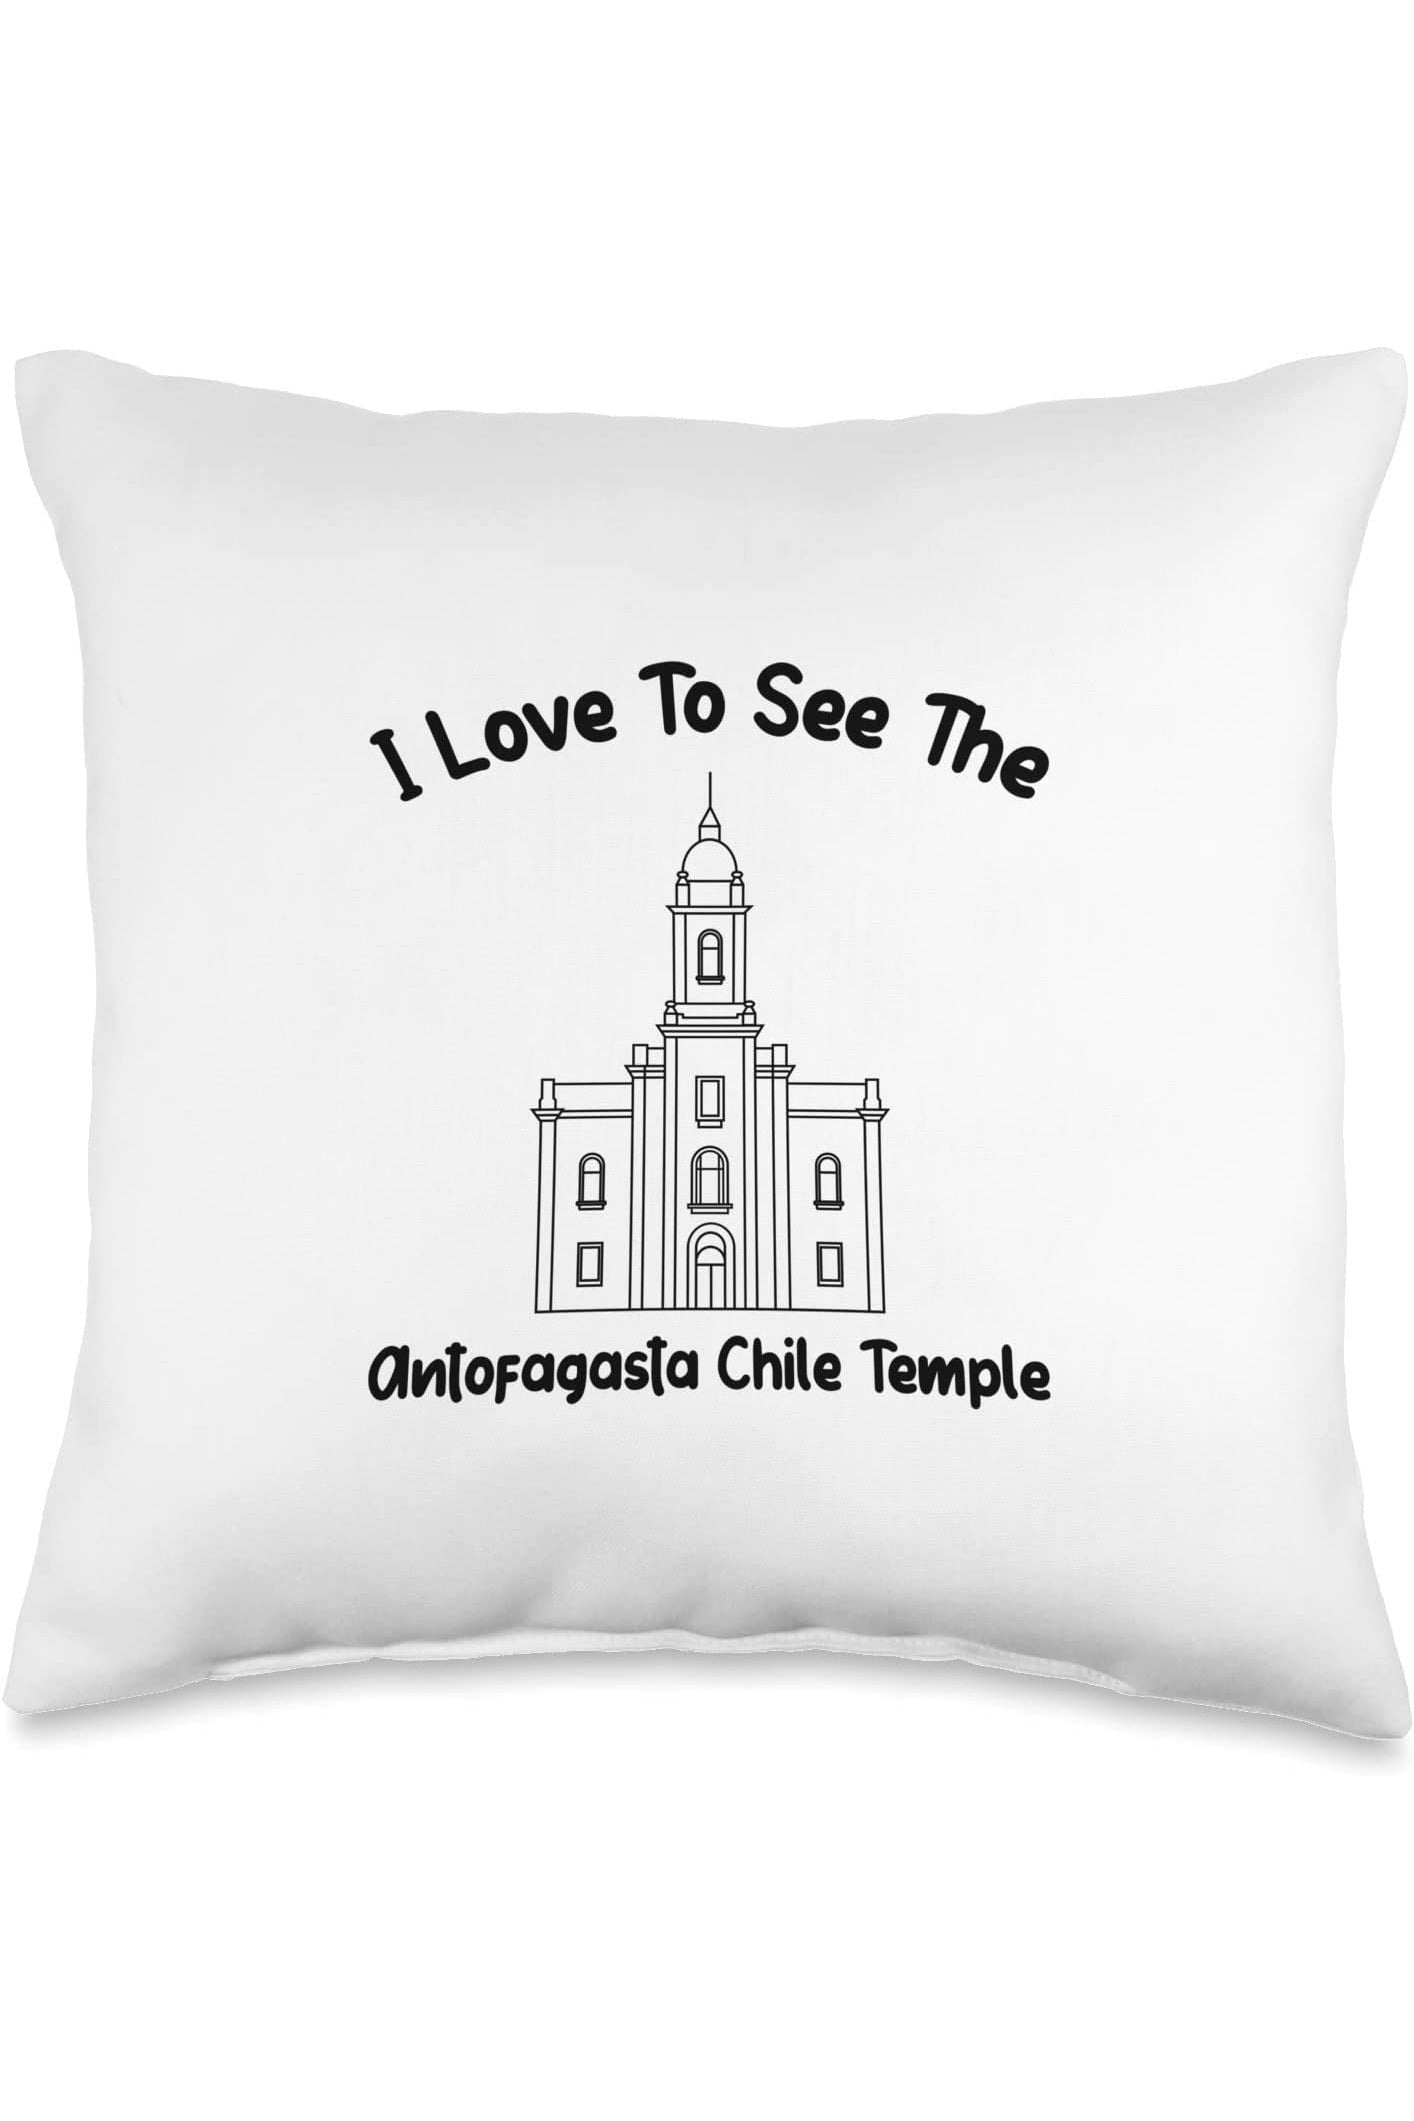 Antofagasta Chile Temple Throw Pillows - Primary Style (English) US